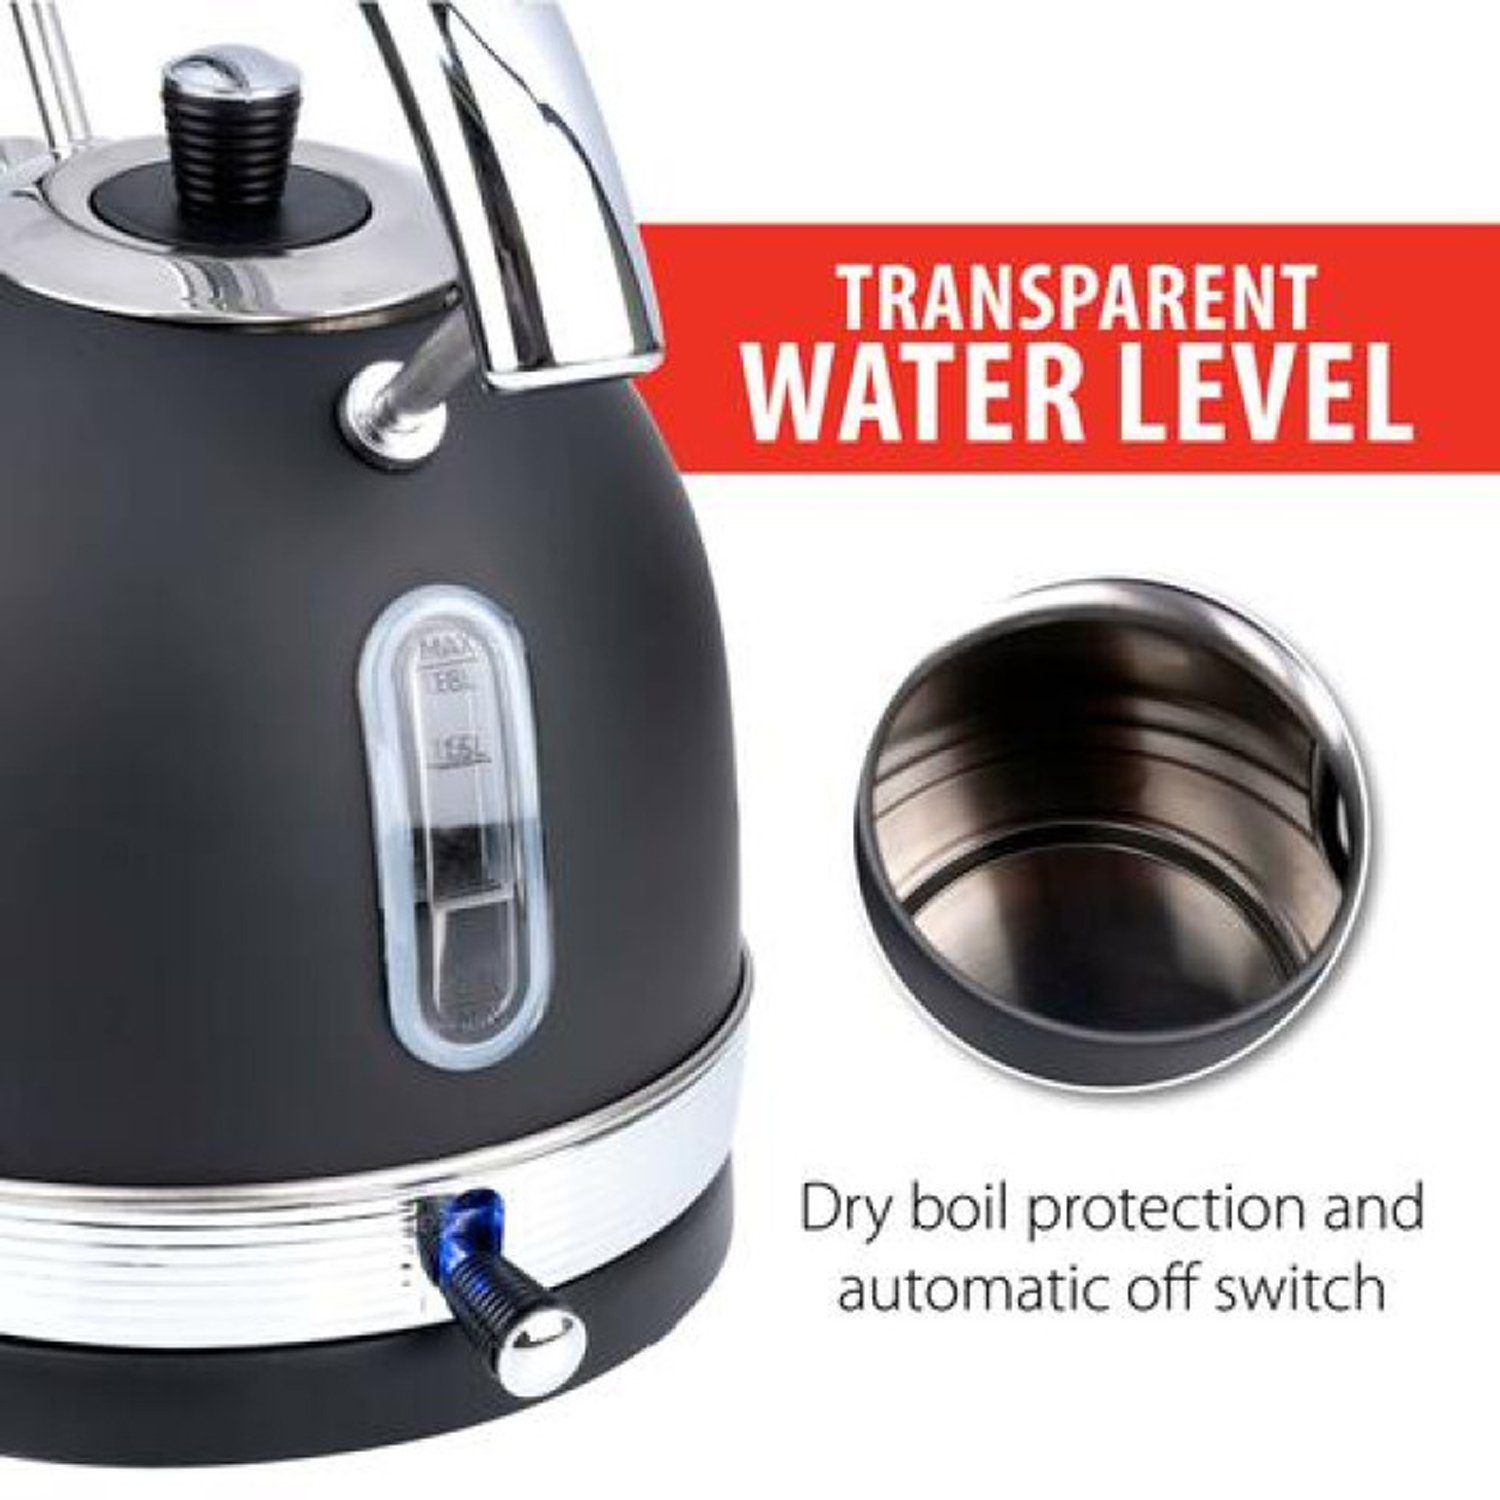 INDA-Exclusiv Wasserkessel Wasserkocher Edelstahl 2200W Abschaltautomatik Thermostat 1,8Liter